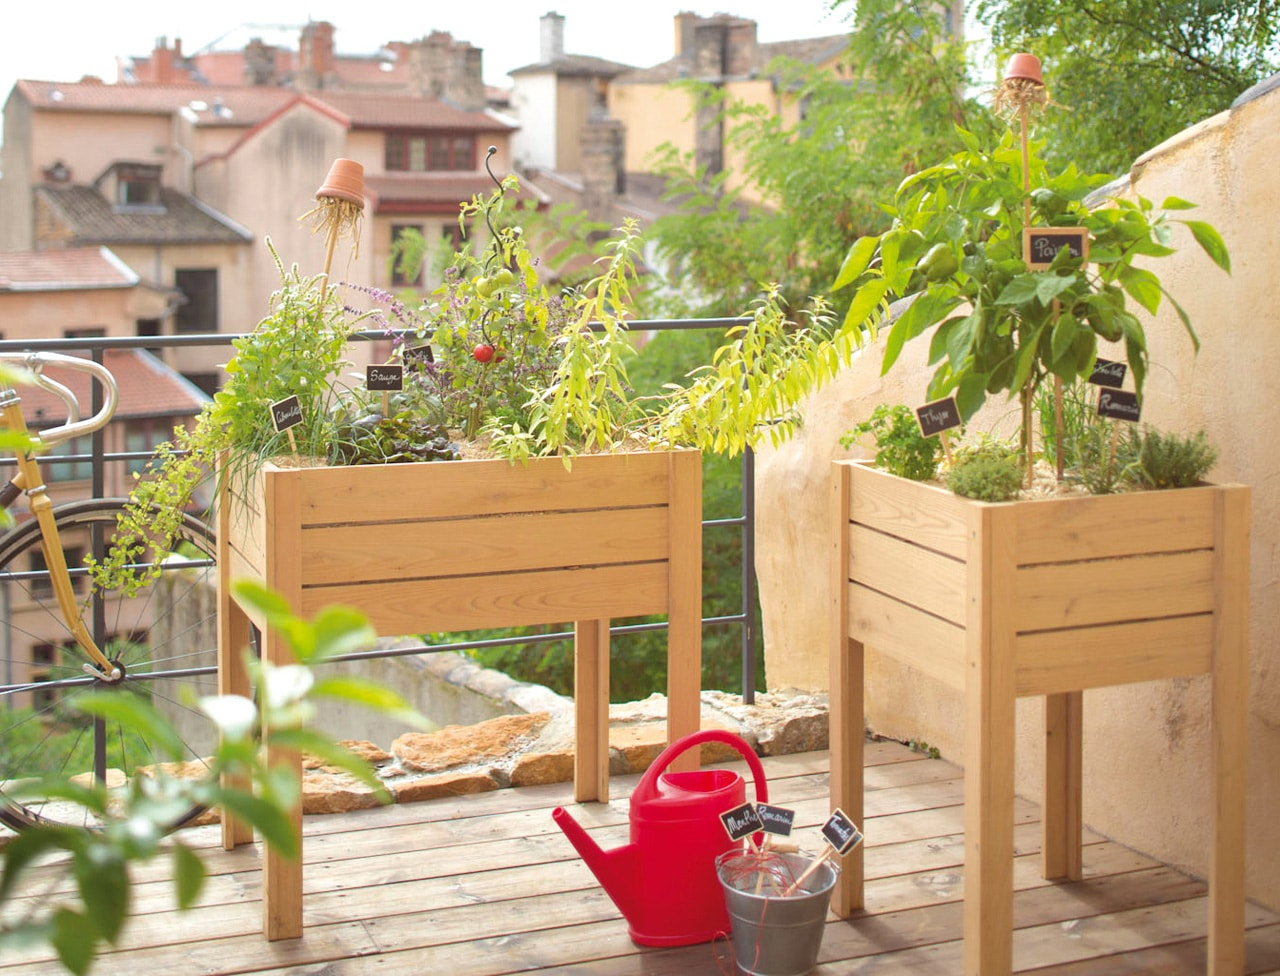 Les Astuces Pour Réaliser Un Potager Sur Son Balcon. avec Jardin Potager De Balcon